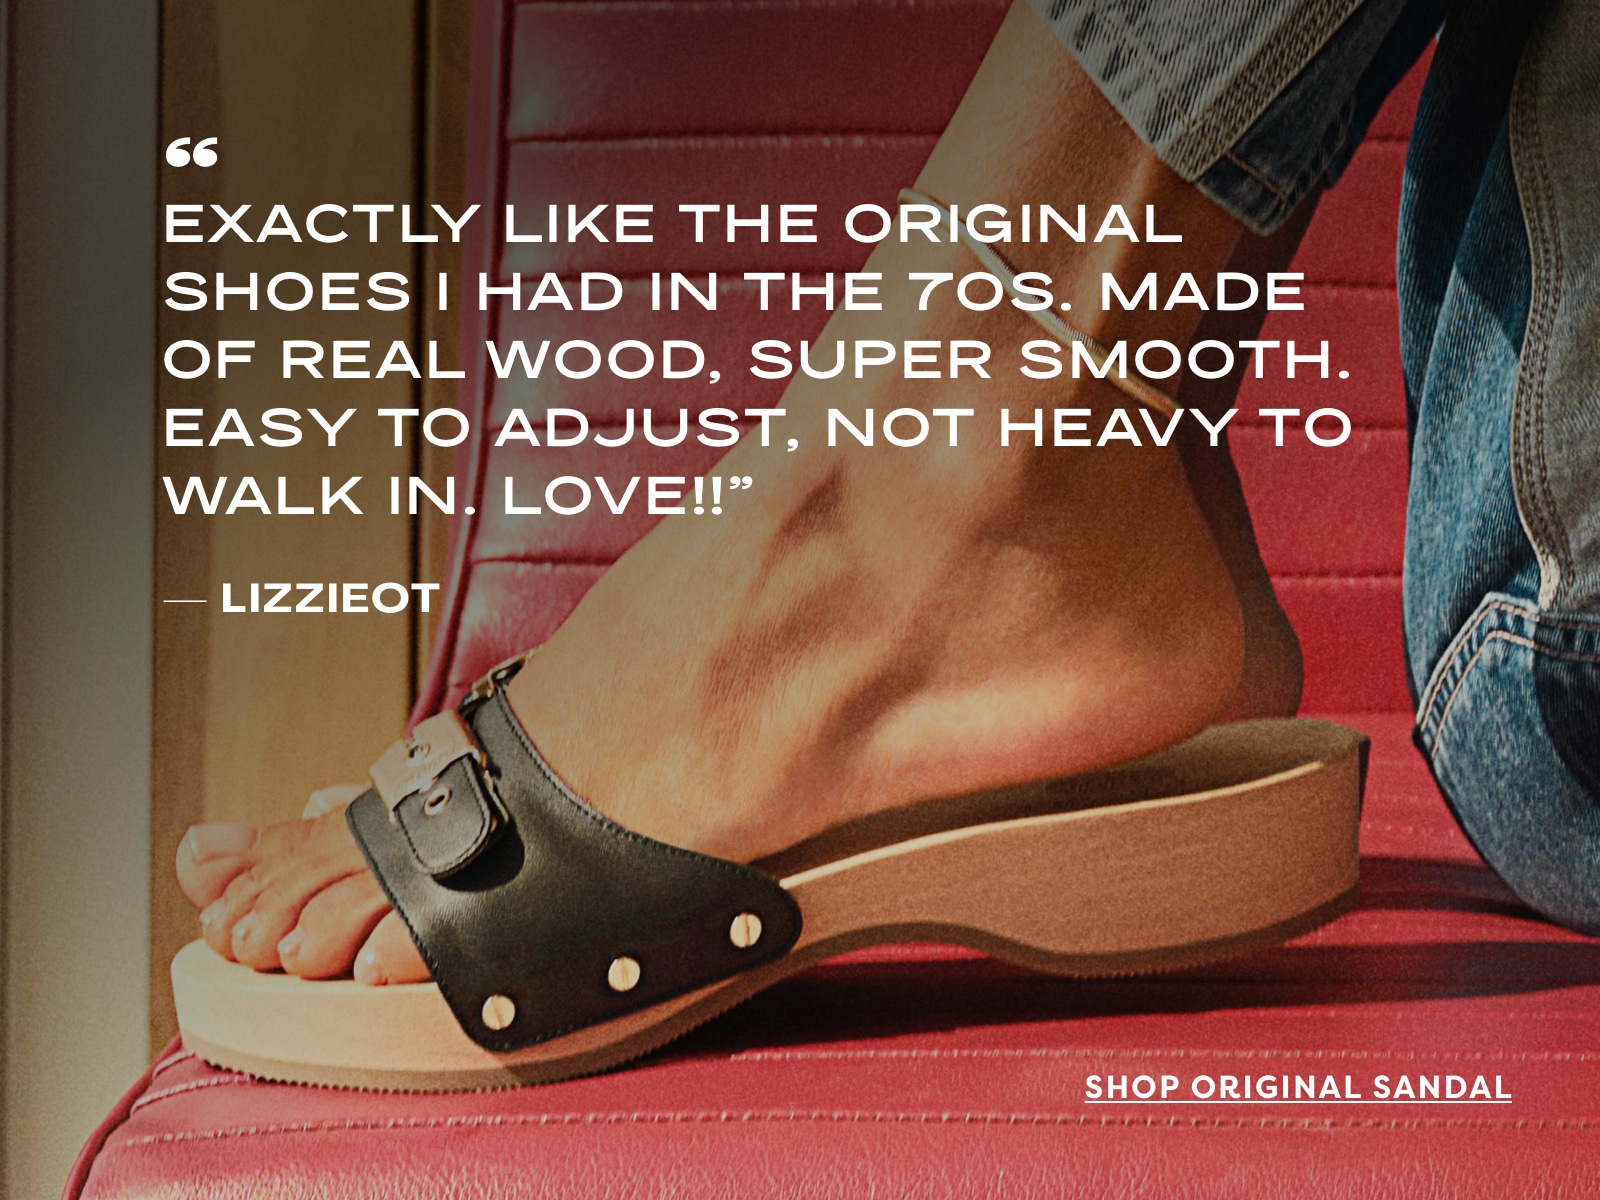 Shop the Original Sandal